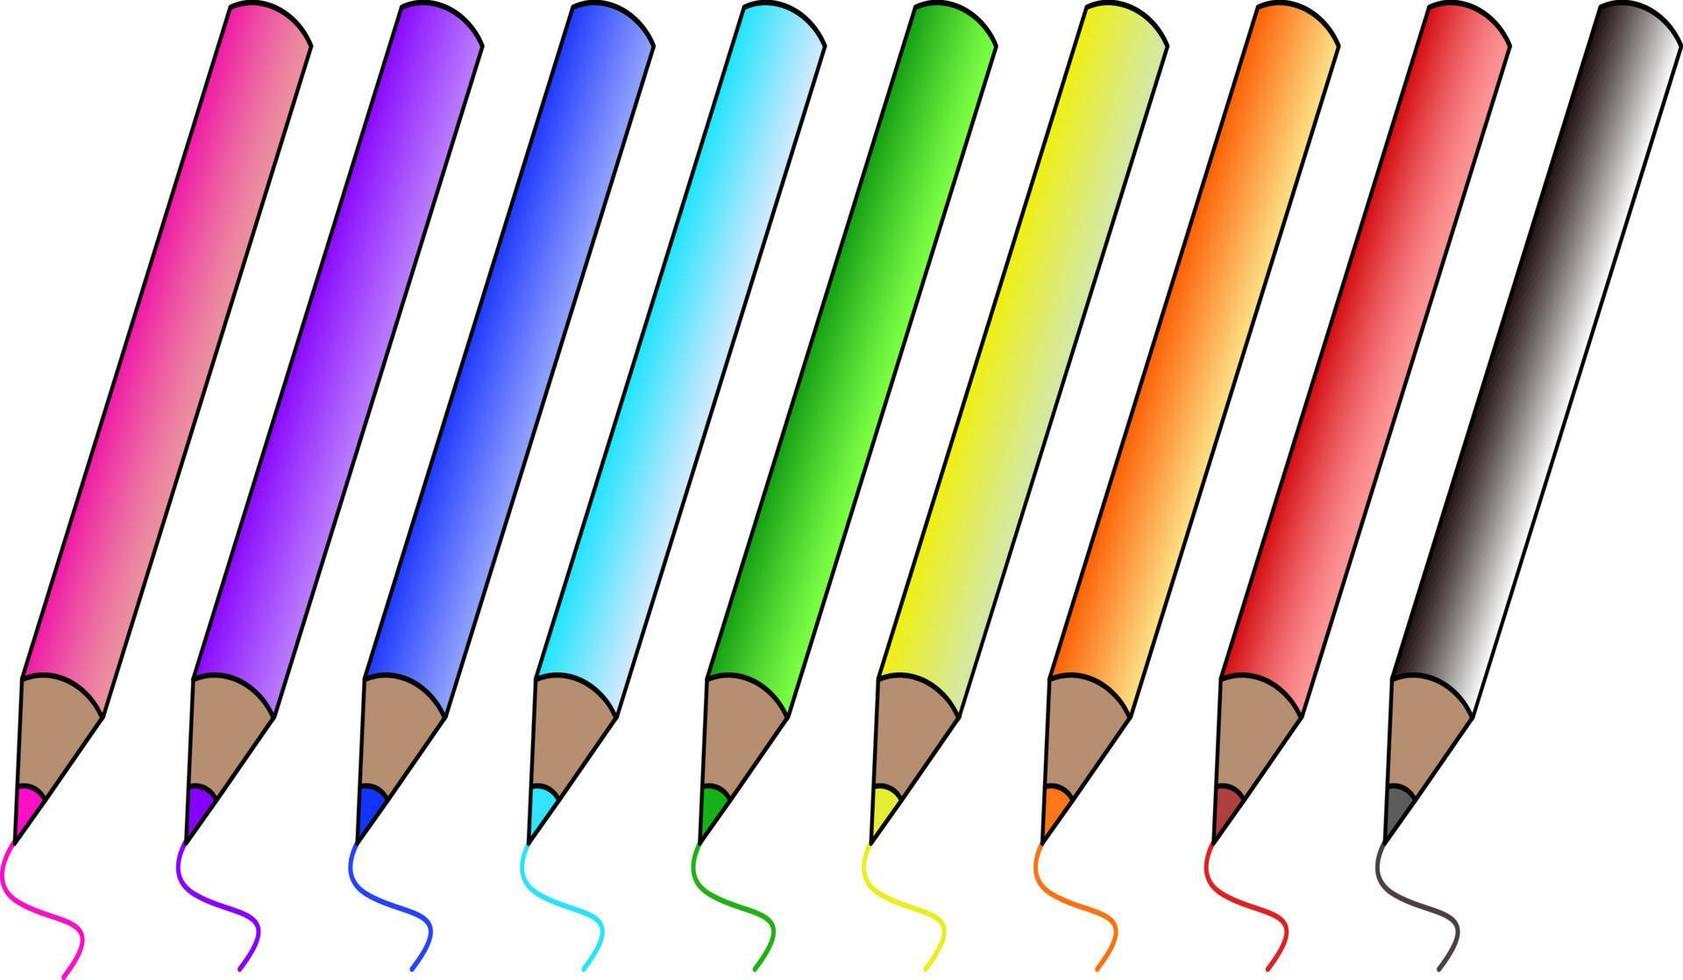 un conjunto de lápices de colores en un vector en un estilo de dibujos animados. un juego de lápices de colores realistas. Volvamos a las materias escolares. desarrollar plantillas para presentaciones, publicaciones, capacitaciones.